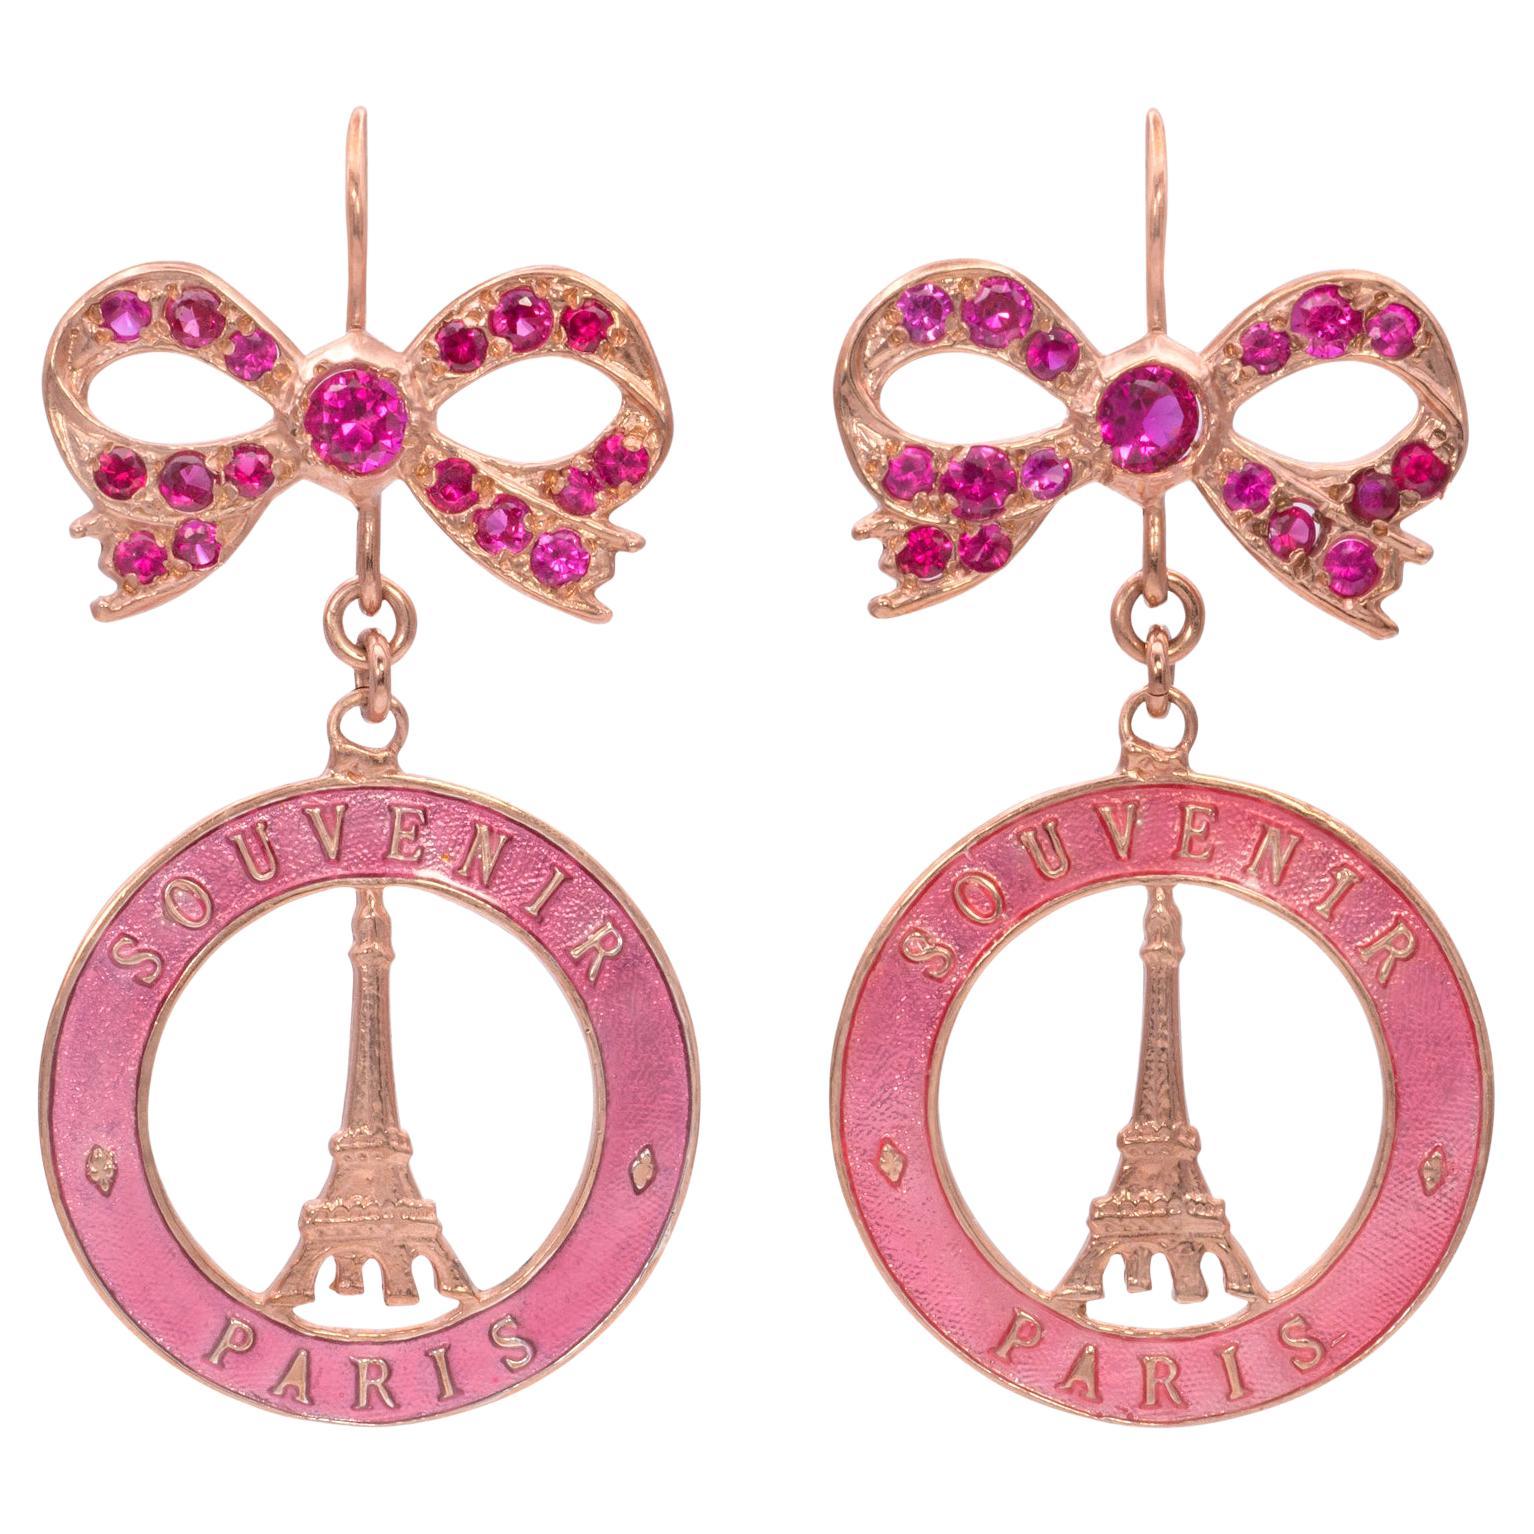 Souvenir de Paris Earrings with Swarovski Crystal bows For Sale